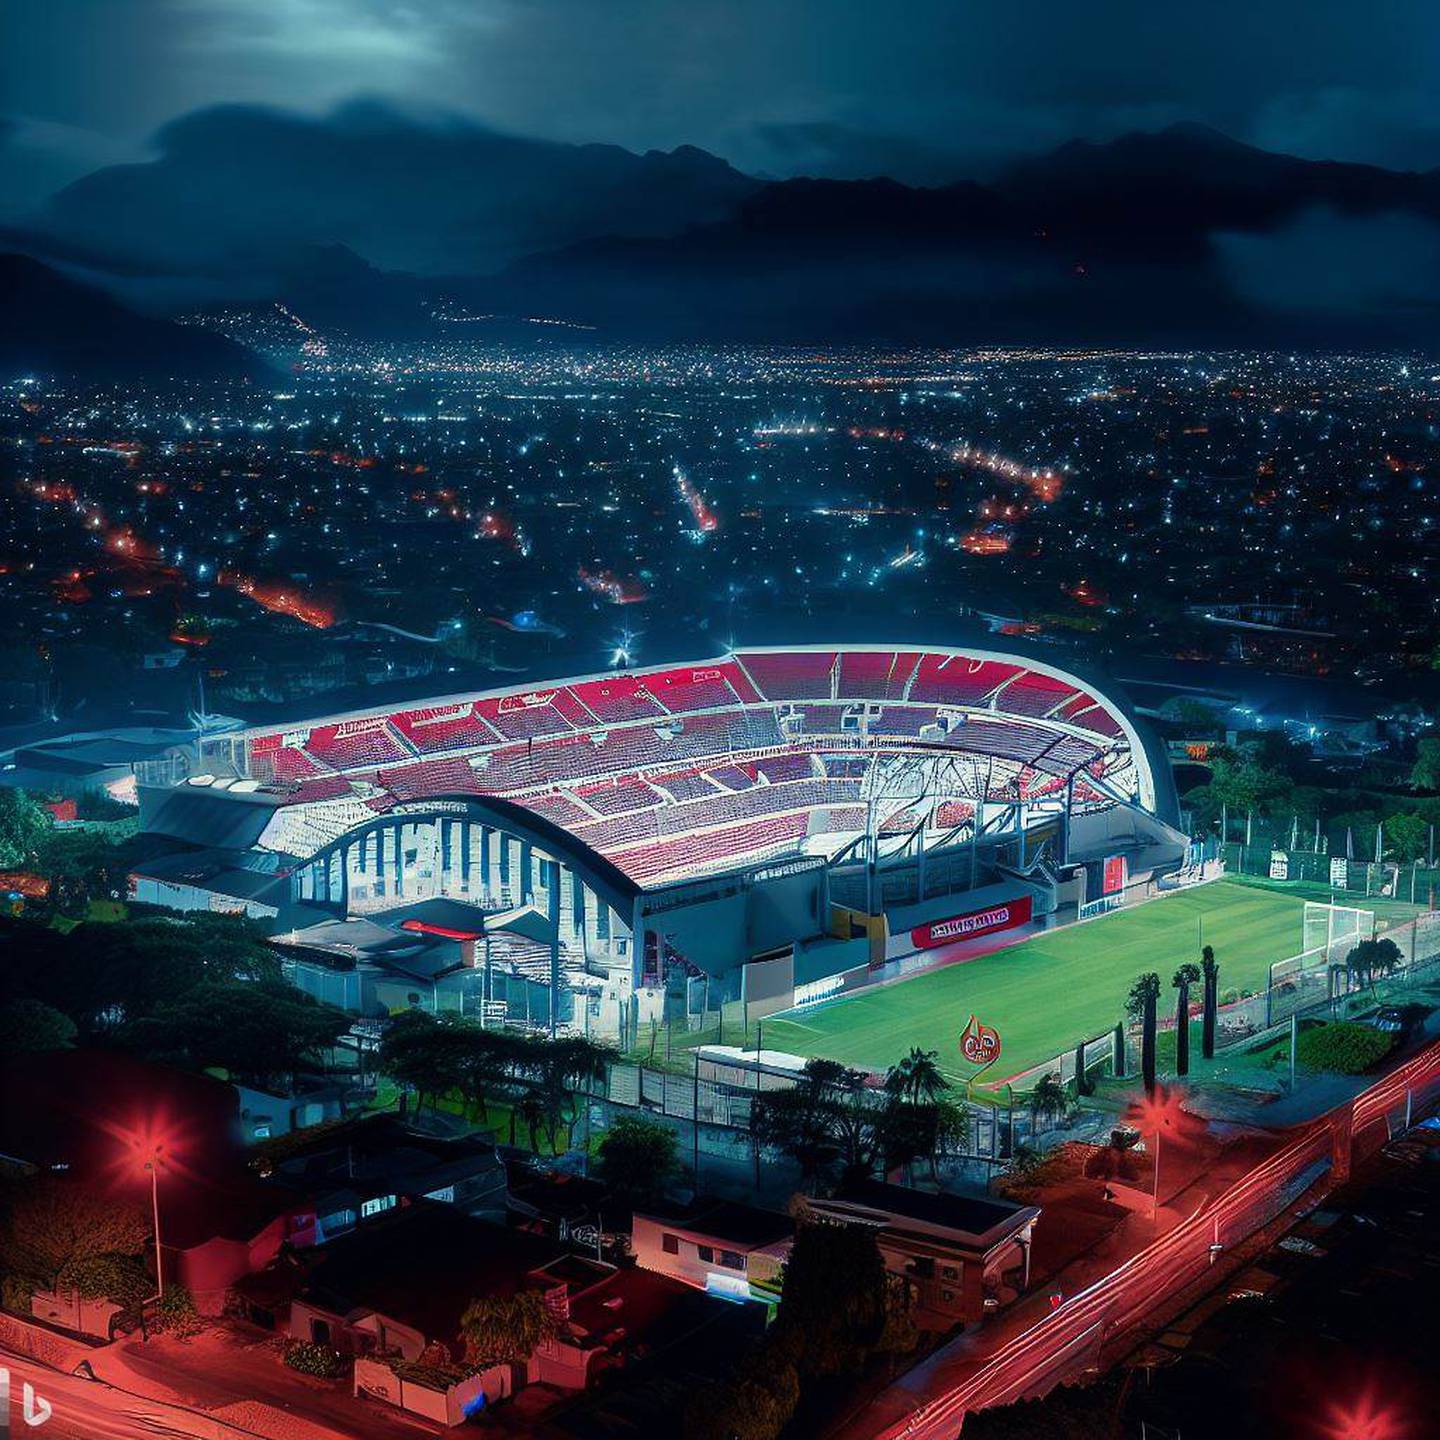 Estadio de Alajuelense en el año 2073 según Bing Image Creator | El Financiero